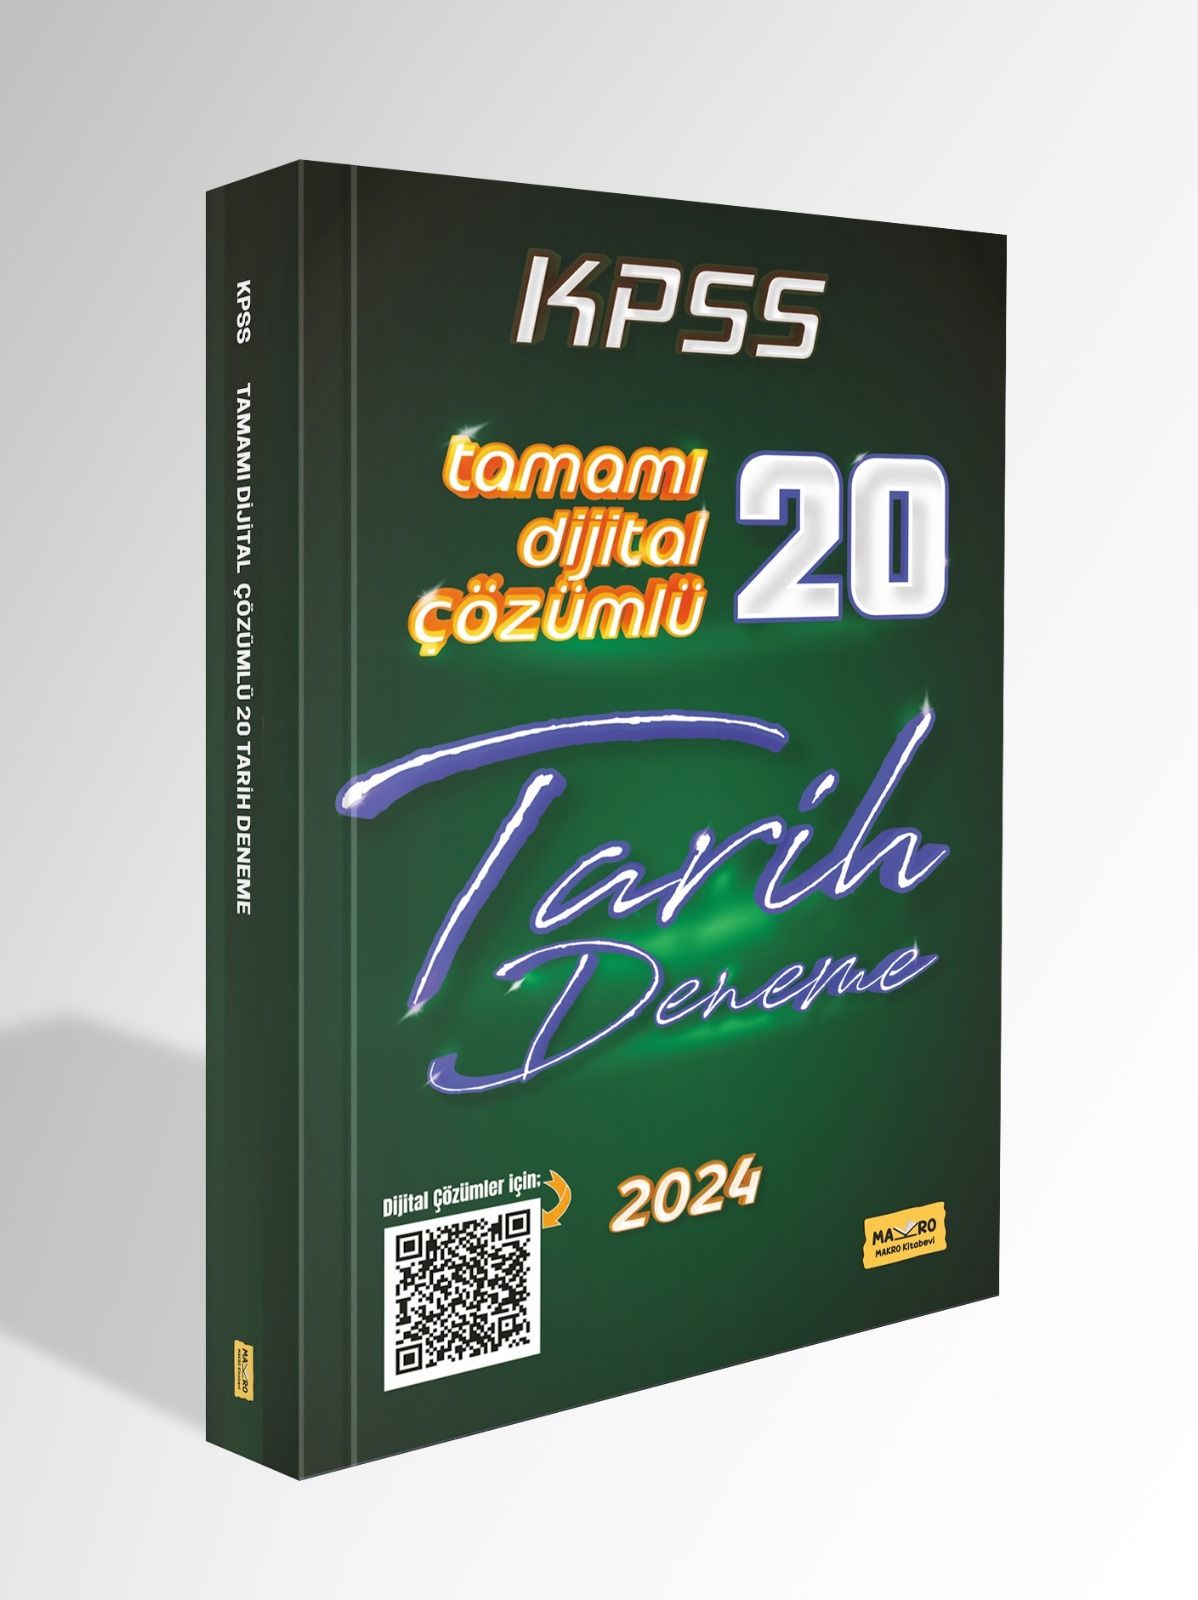 KPSS Tarih Tamamı Dijital Çözümlü 20 Deneme 2024